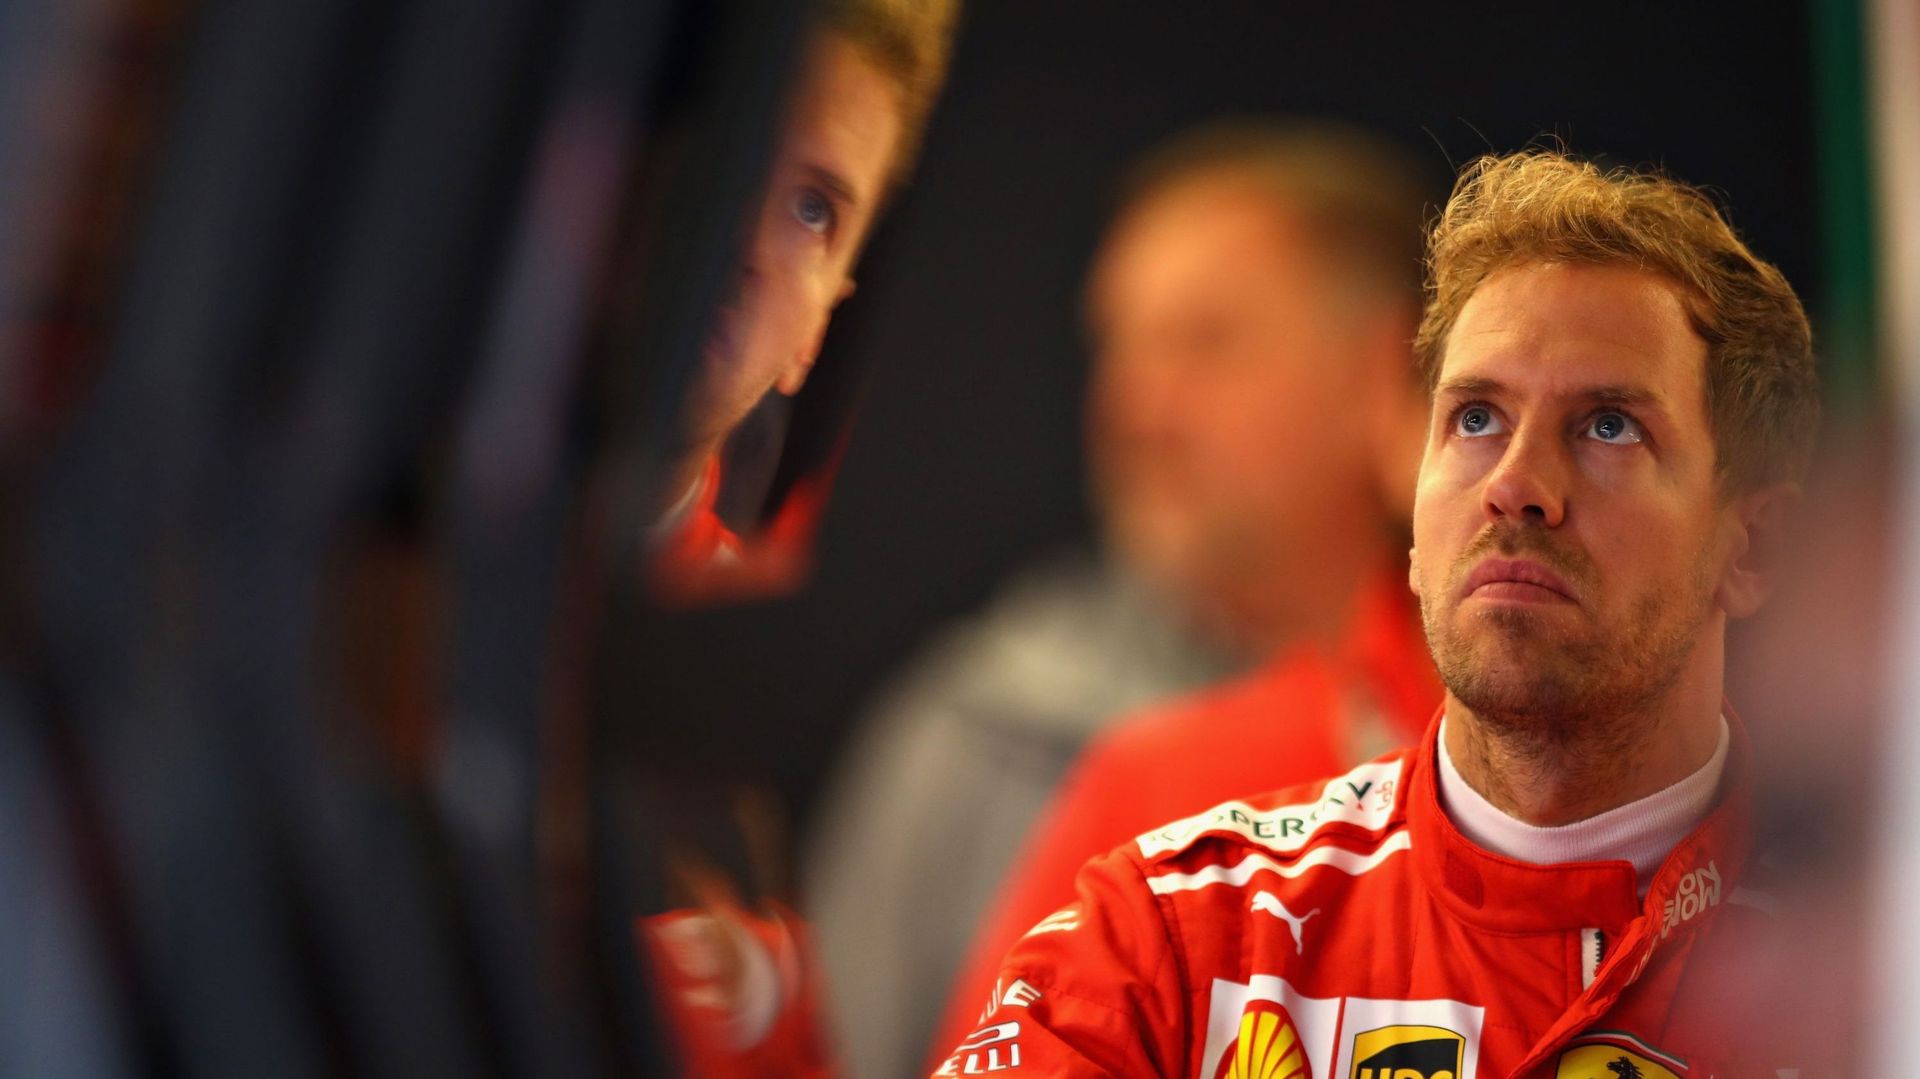 Vettel, pénalisé de 3 places sur la grille, rapproche encore Hamilton du titre